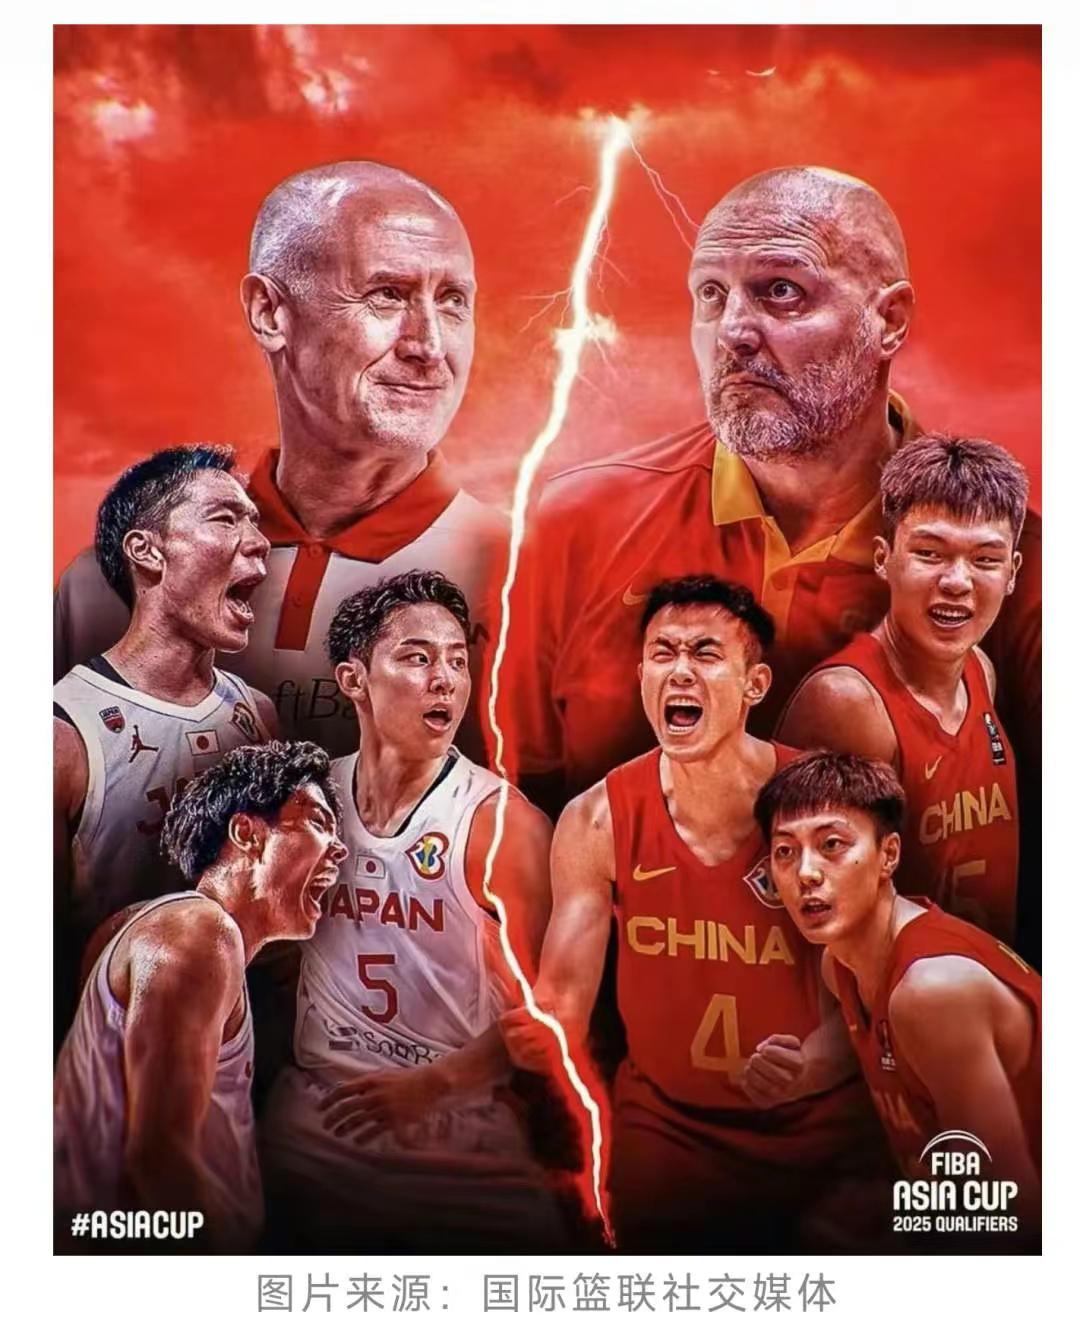 留给中国篮球的时间不多了。乔帅的欧洲执教经验太深，或许真的用不上了